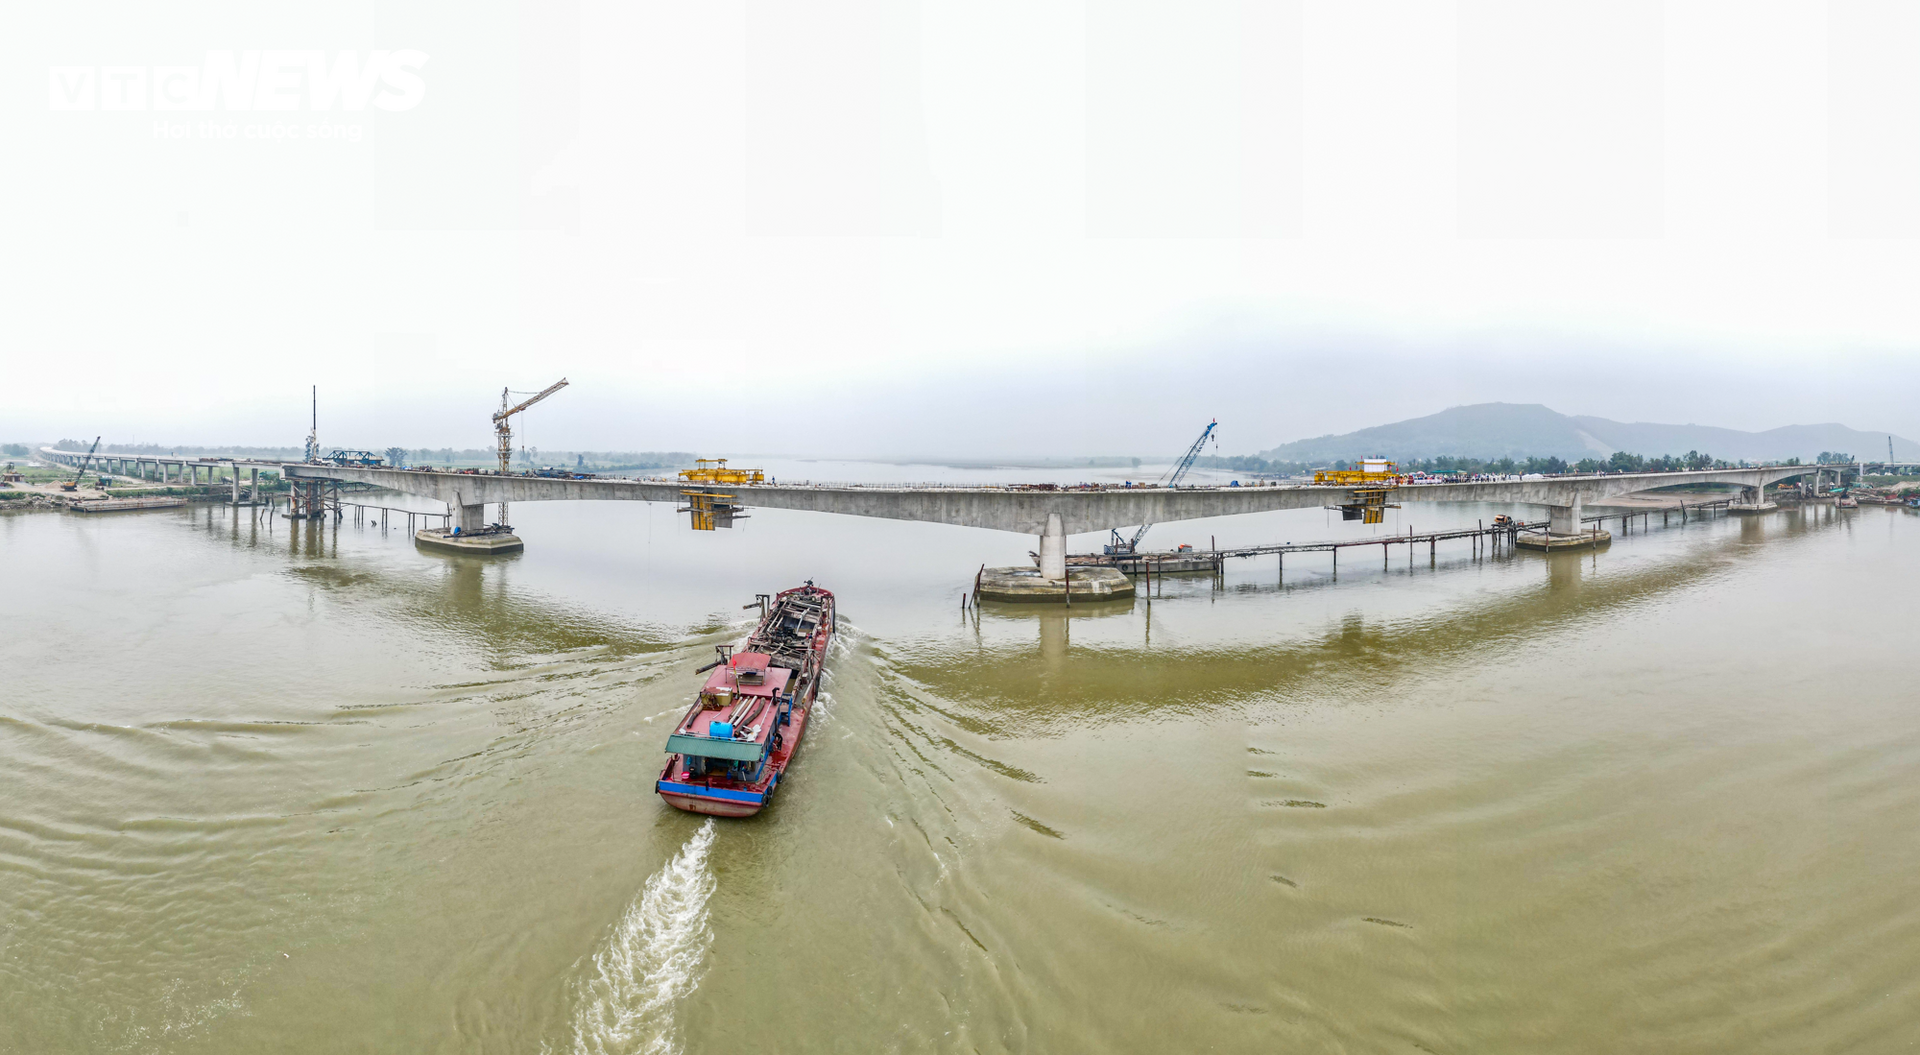 Hợp long cầu vượt sông dài nhất cao tốc Bắc -Nam nối Nghệ An và Hà Tĩnh - 2